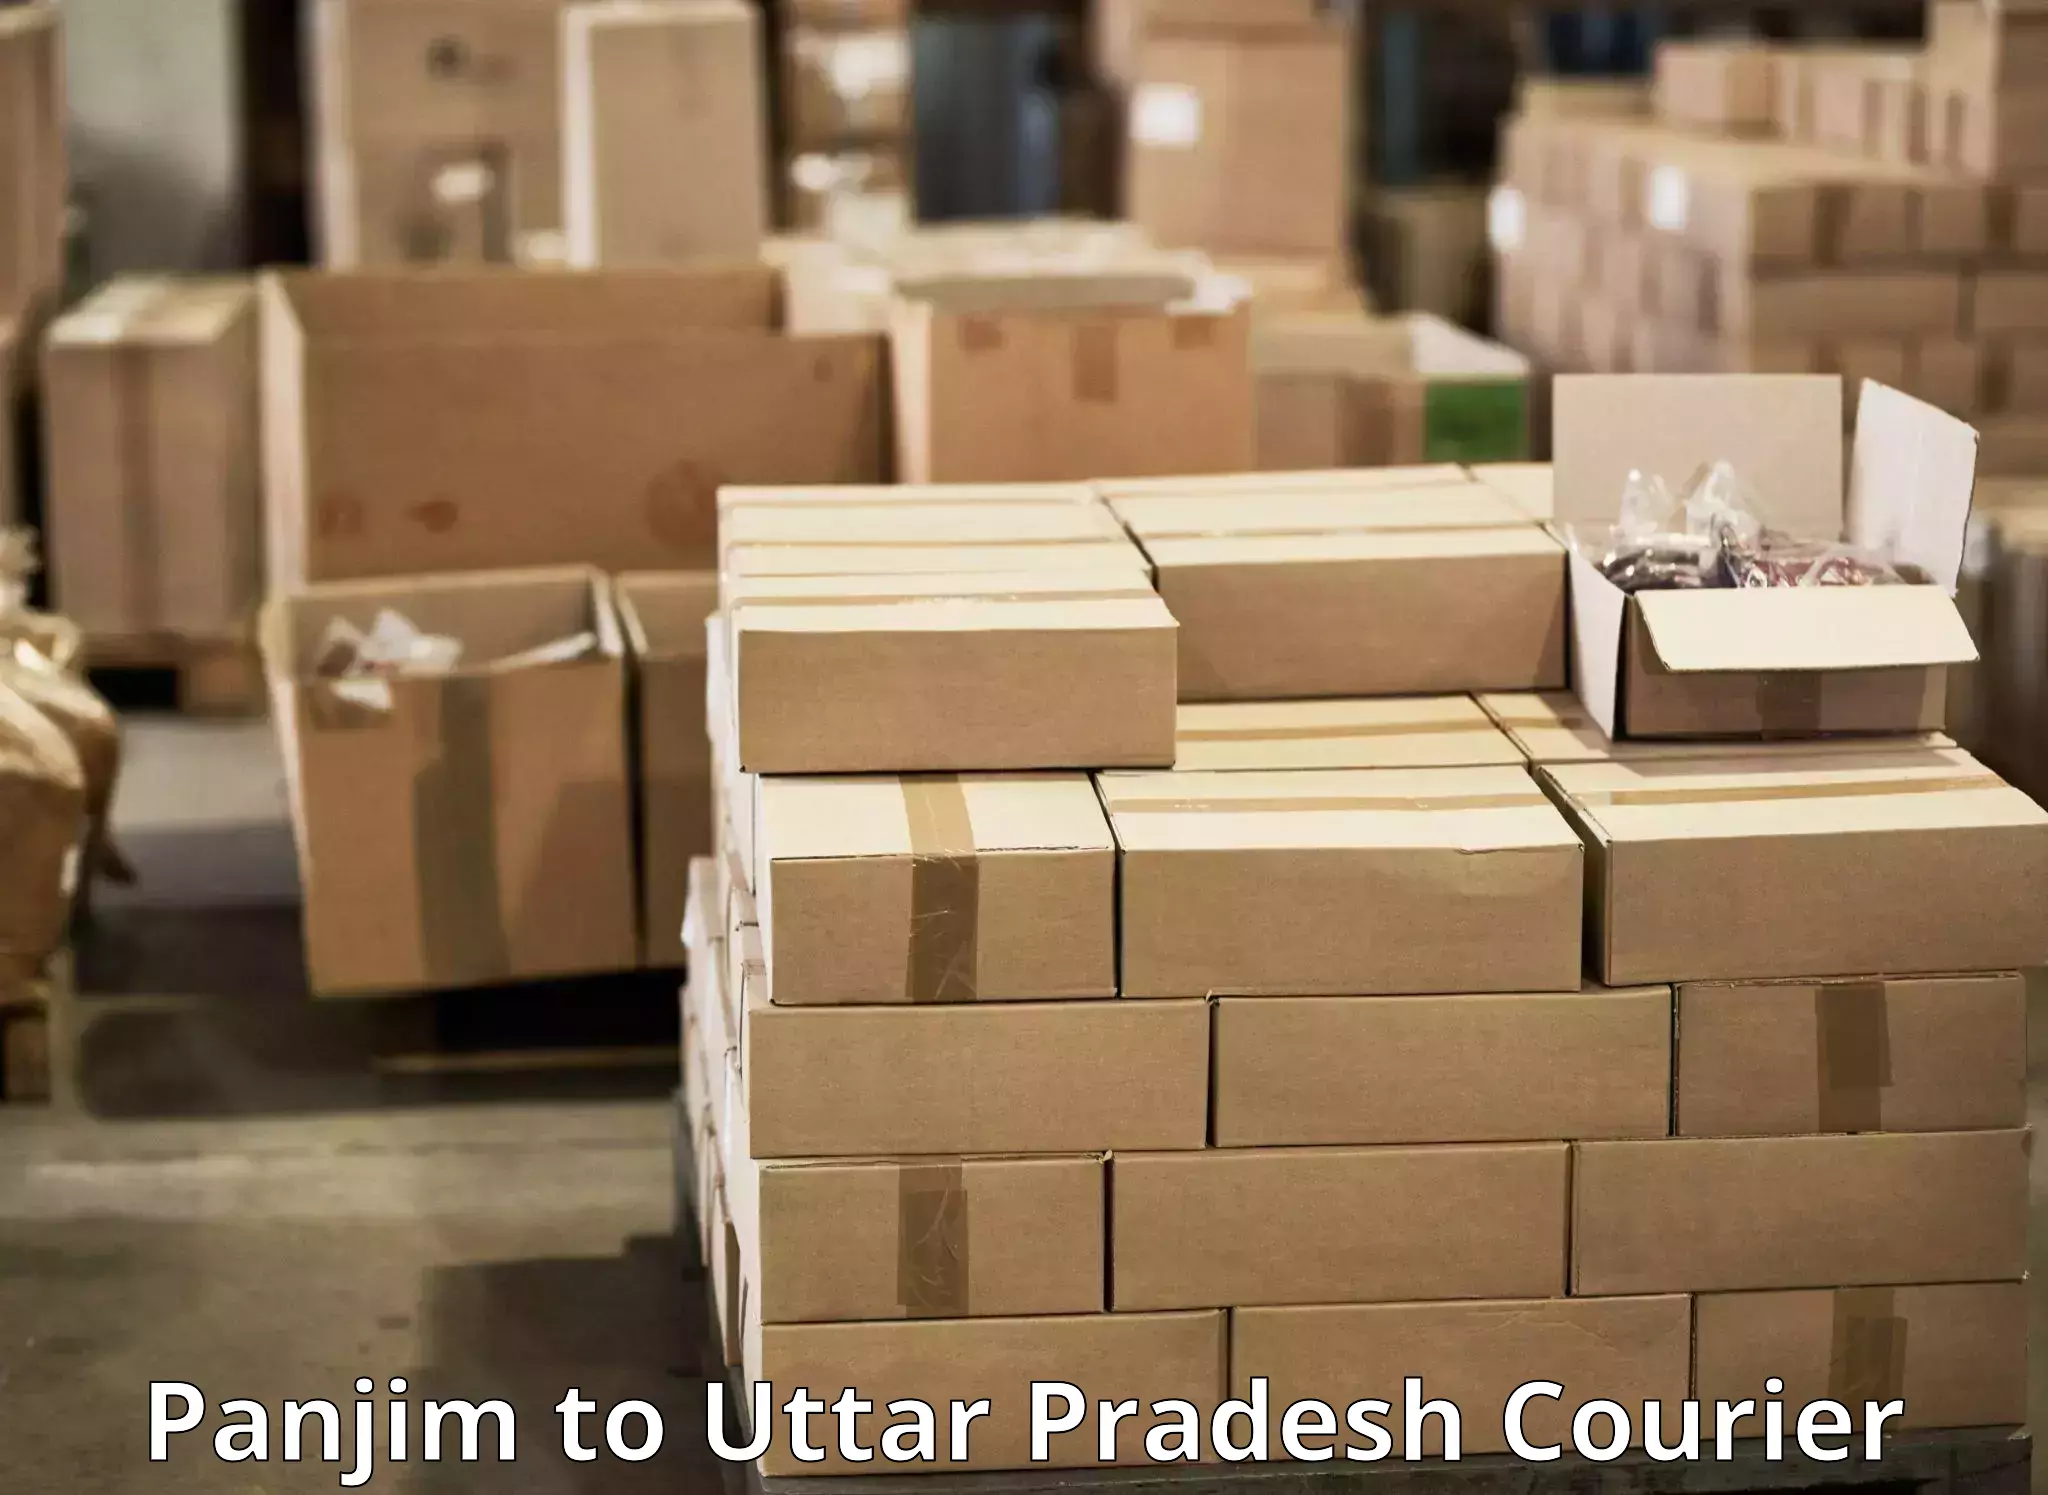 Multi-city courier Panjim to Agra